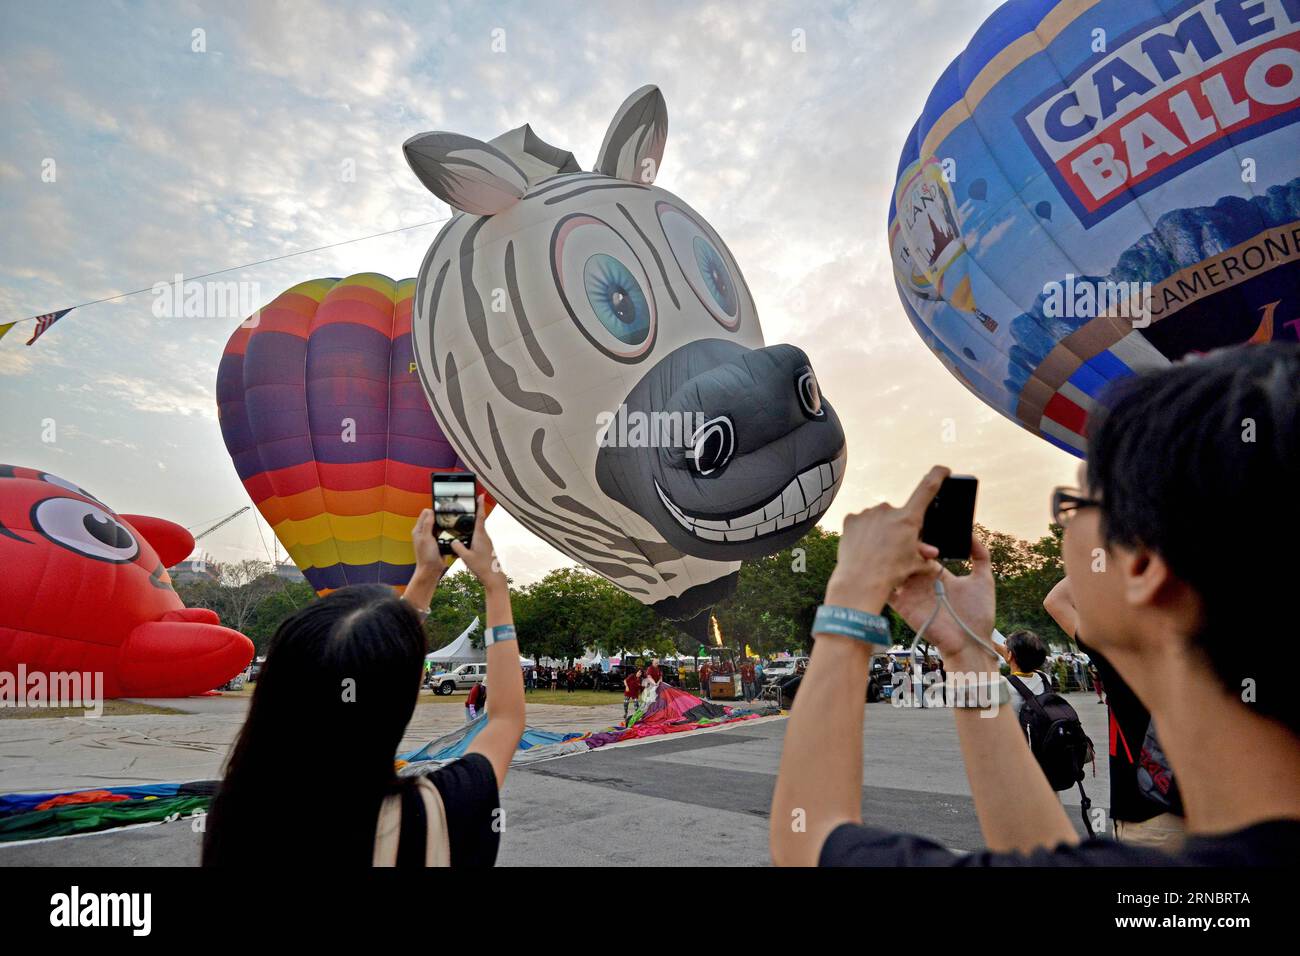 (160311) -- PUTRAJAYA (MALESIA), 11 marzo 2016 -- i turisti scattano foto di mongolfiere durante l'8a Putrajaya International Hot Air Balloon Fiesta a Putrajaya, Malesia, 11 marzo 2016. La festa di tre giorni in mongolfiera ha aperto qui il venerdì con la partecipazione di circa 20 mongolfiere. MALESIA-PUTRAJAYA-FESTIVAL-MONGOLFIERE ChongxVoonxChung PUBLICATIONxNOTxINxCHN Putrajaya Malesia 11 marzo 2016 i turisti scattano foto delle mongolfiere durante l'8a Putrajaya International Hot Air Balloon Fiesta a Putrajaya Malesia 11 marzo 2016 The Three Day Hot Air Balloon Fiesta op Foto Stock